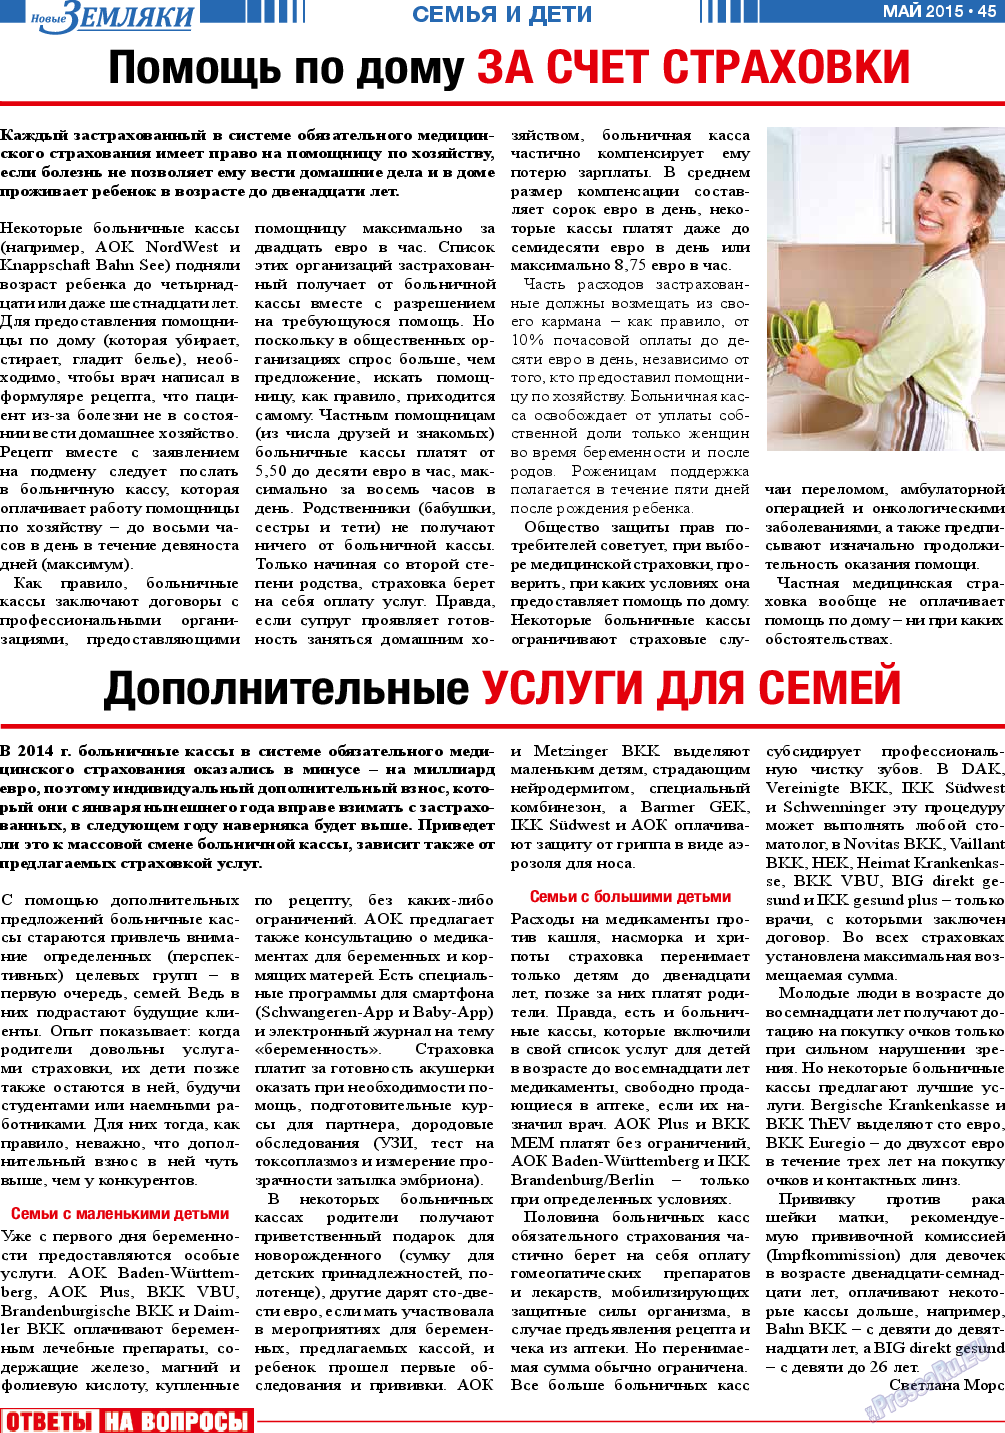 Новые Земляки, газета. 2015 №5 стр.45